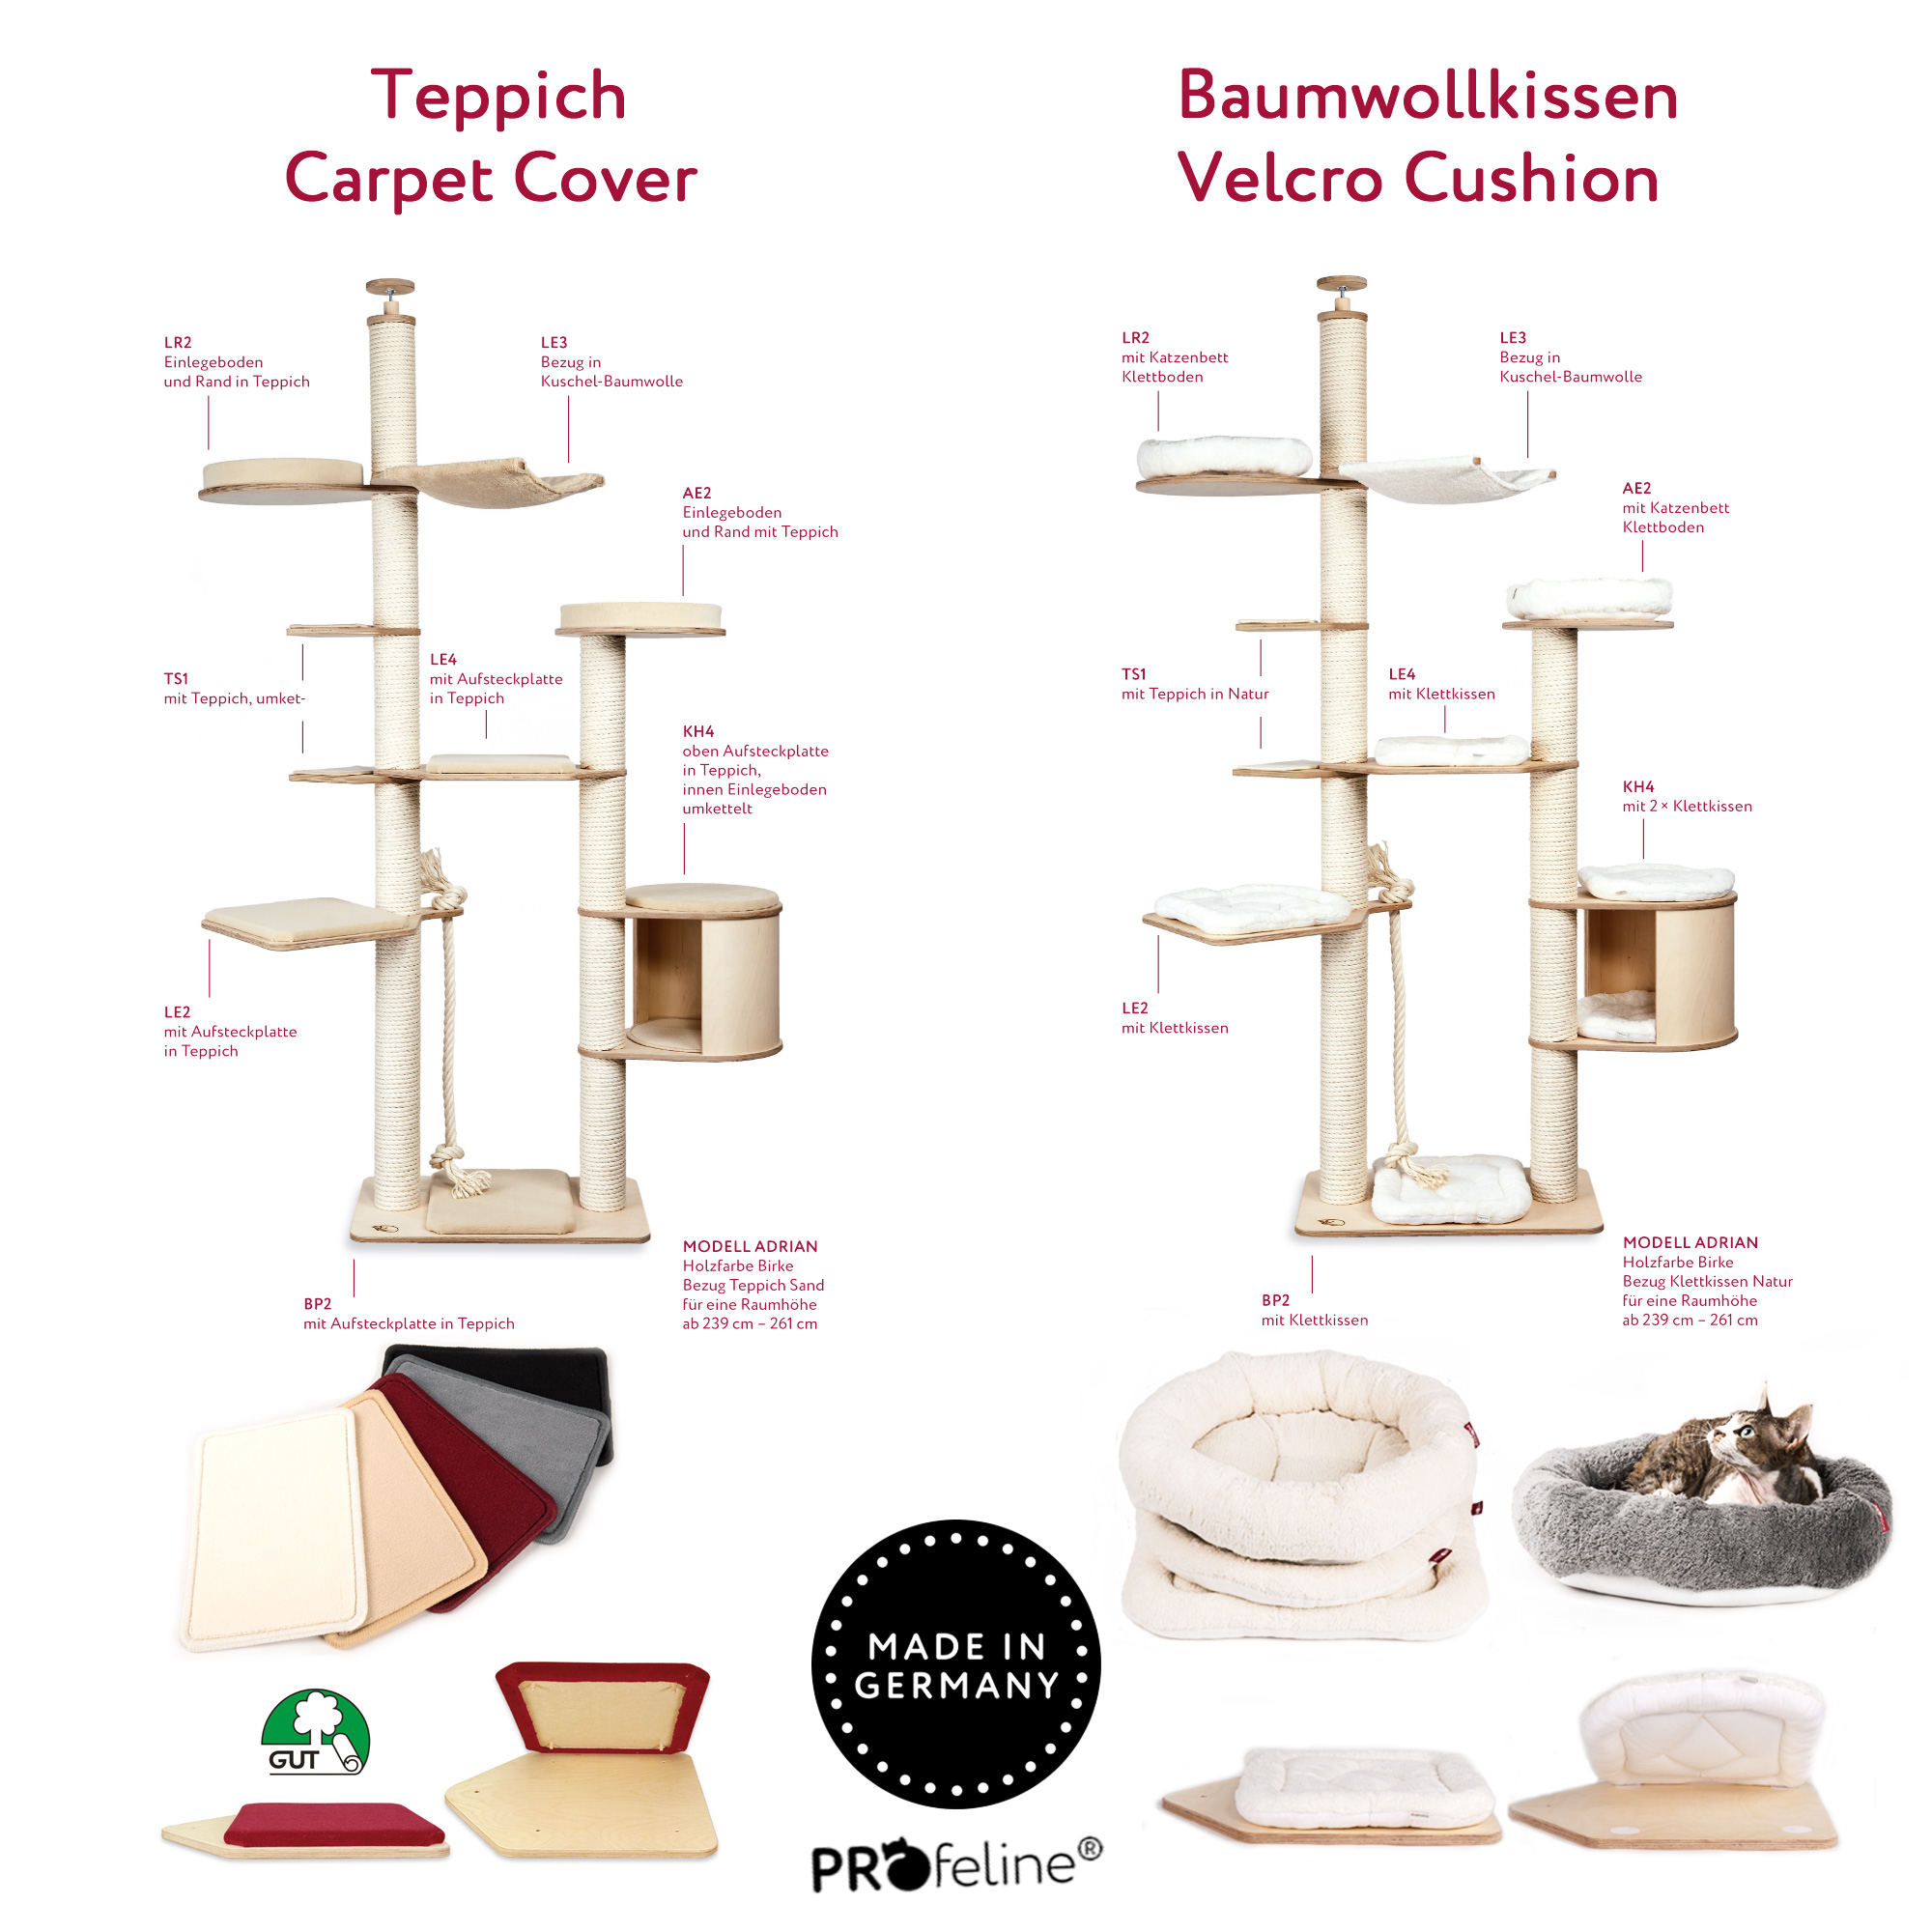 Vergleich Teppich / Baumwollkissen